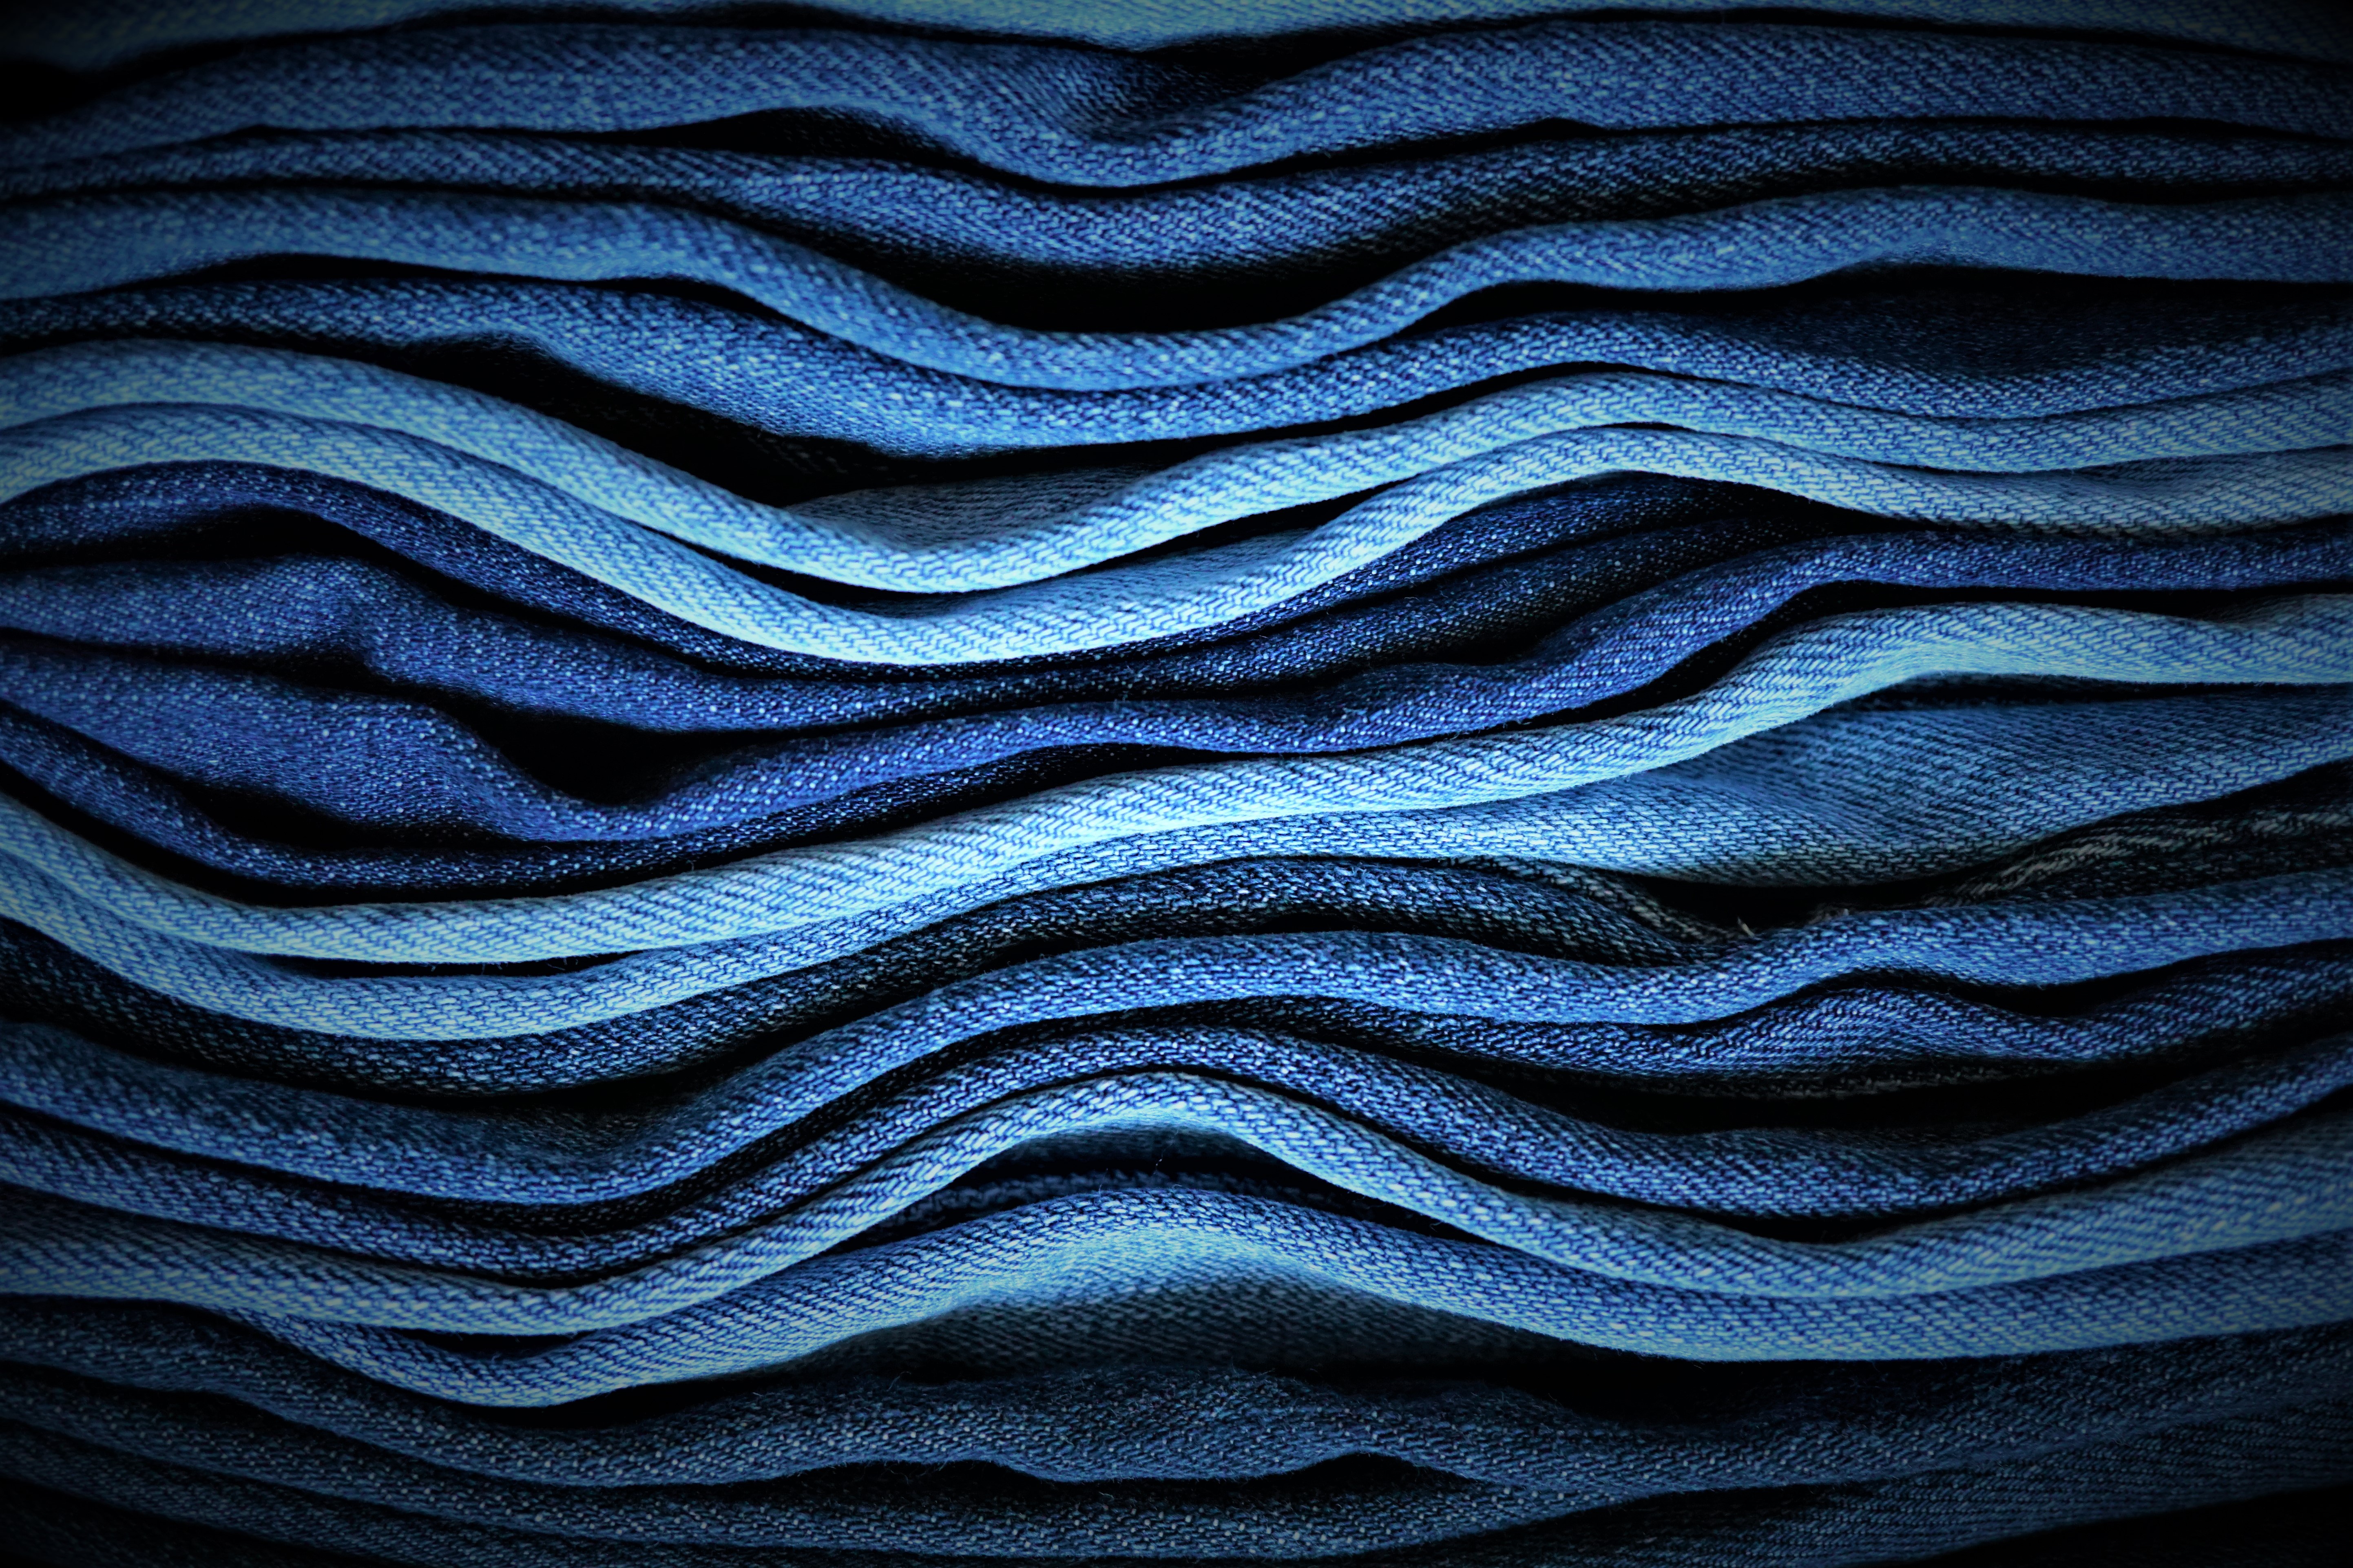 61+] NewJeans Wallpapers - WallpaperSafari